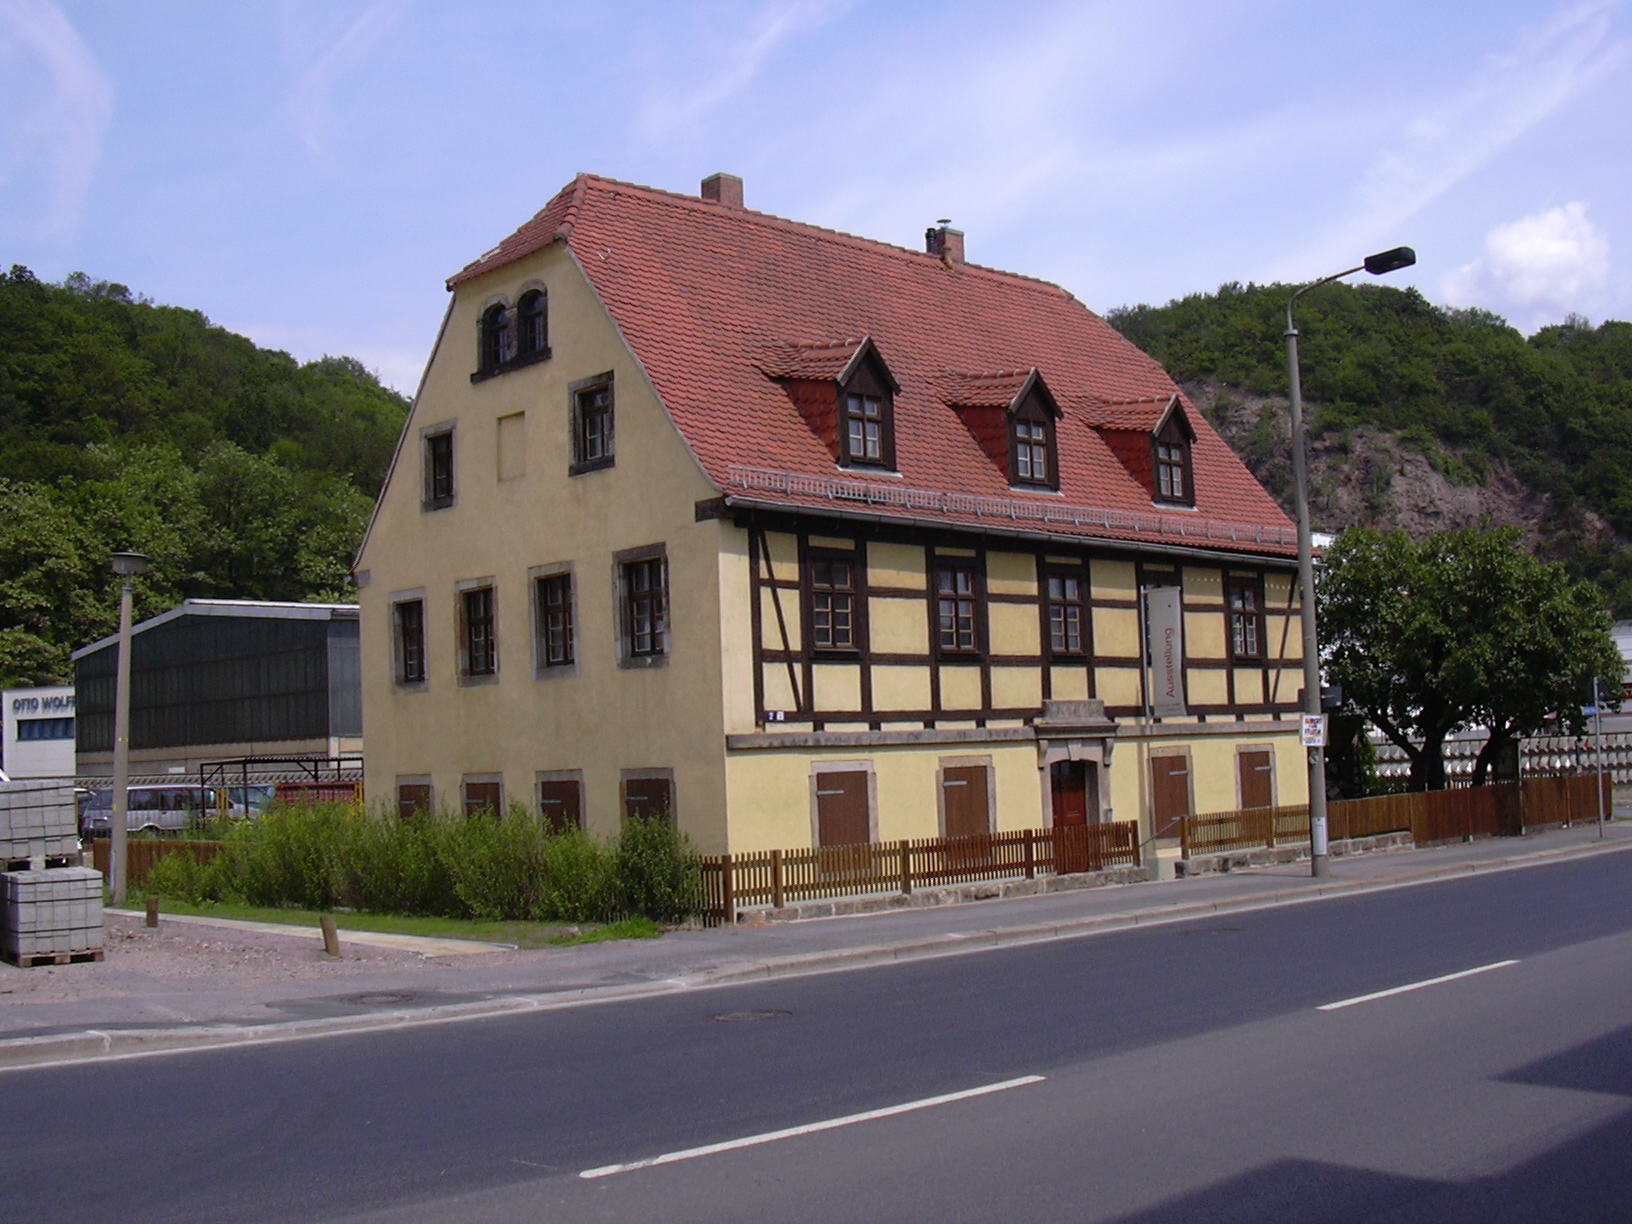 Foto vom Einnehmerhaus Dresdner Straße 2 in Freital, Foto: WGF